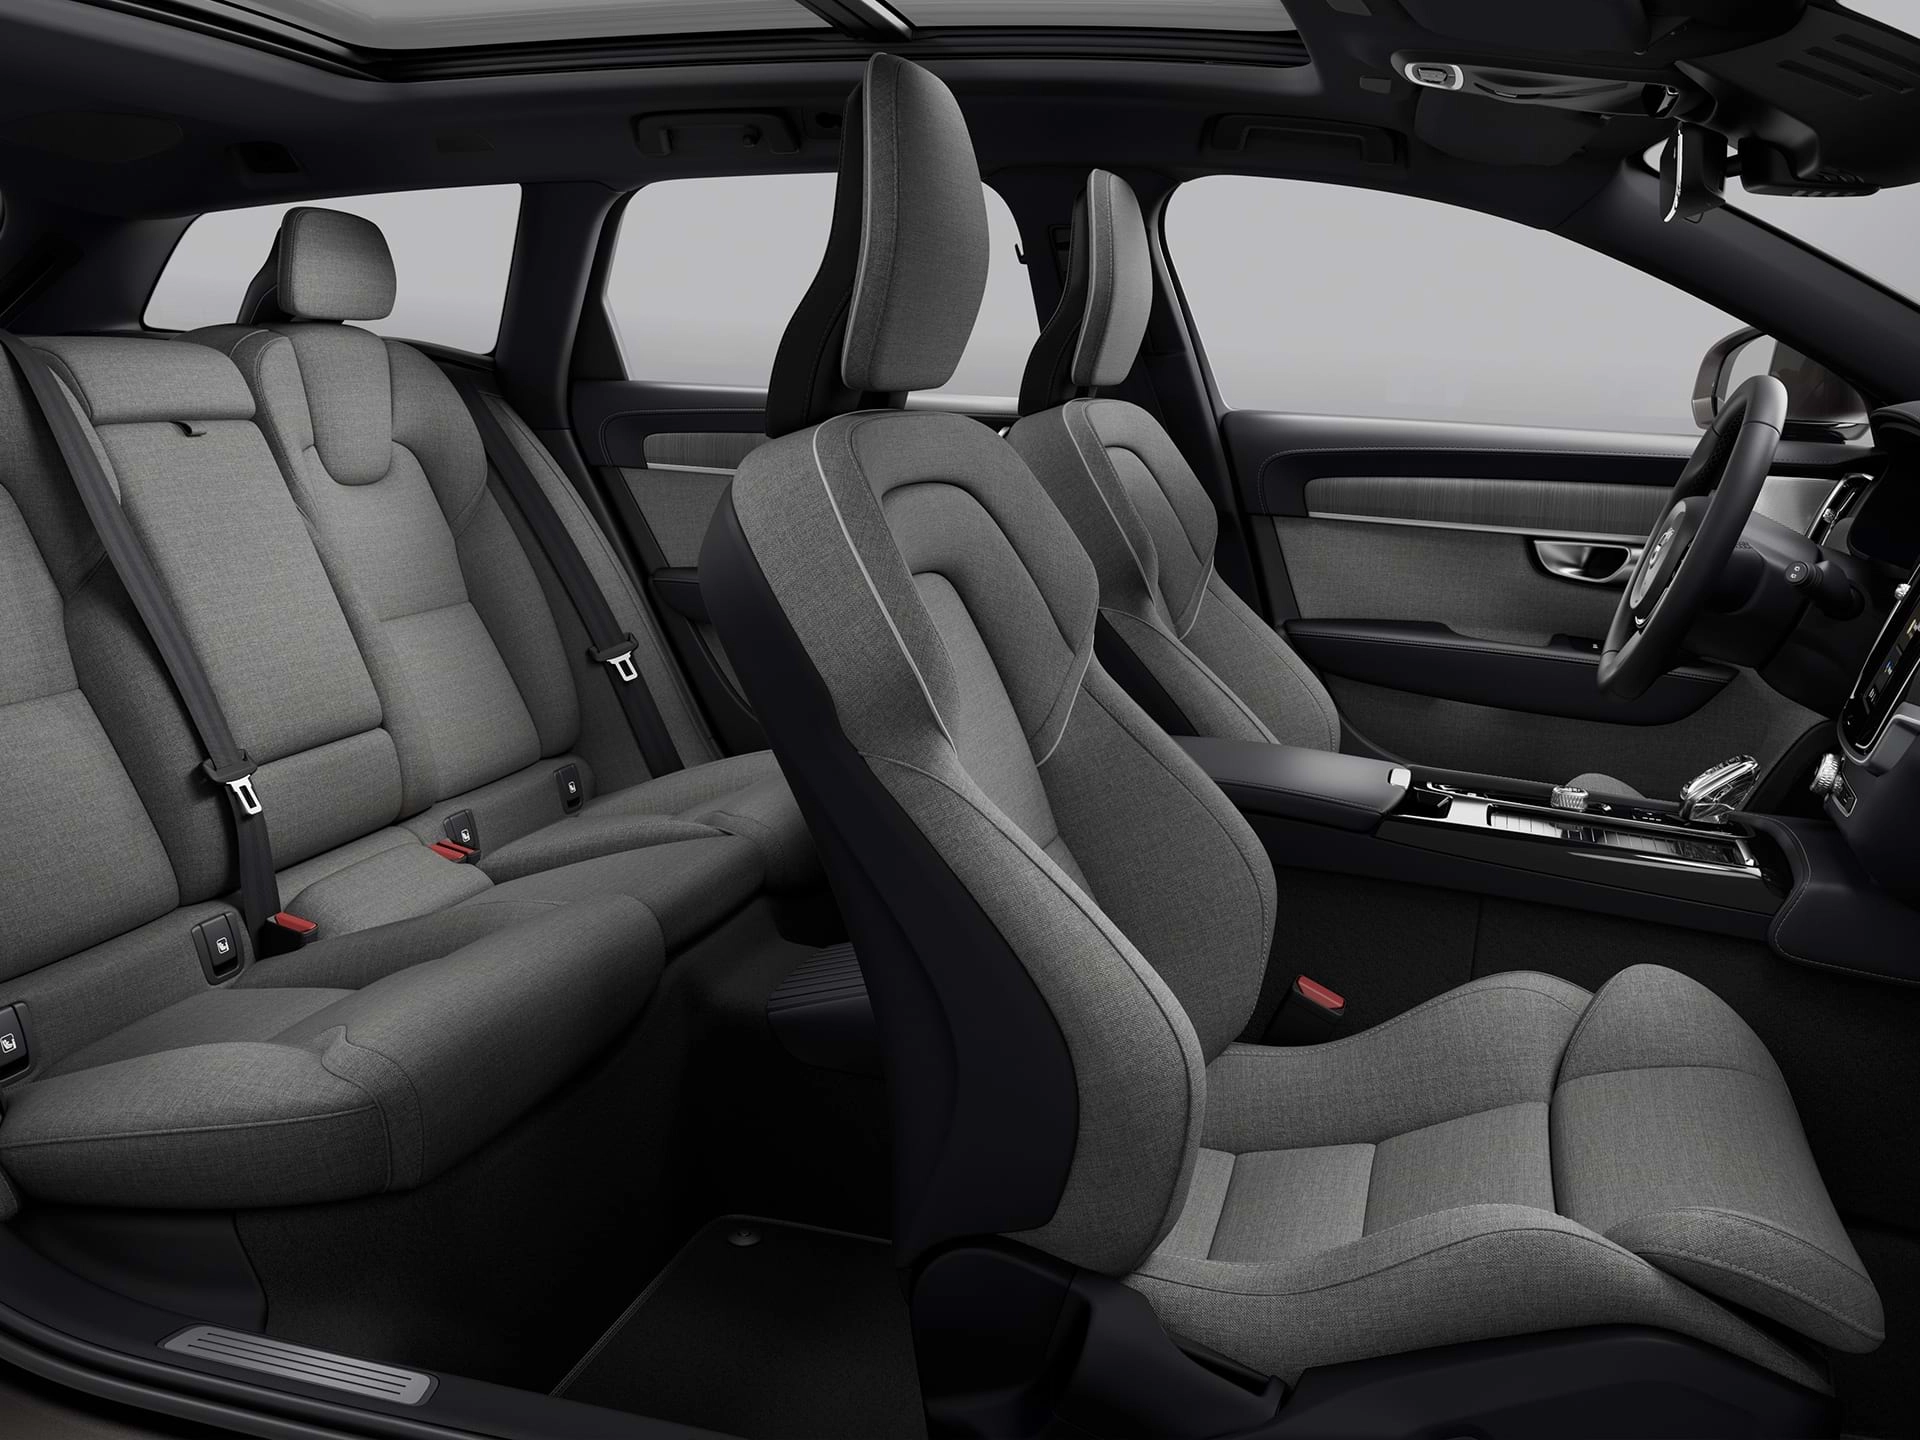 Vue panoramique des quatre sièges recouverts de tissu de l'habitacle d'un spacieux break Volvo.